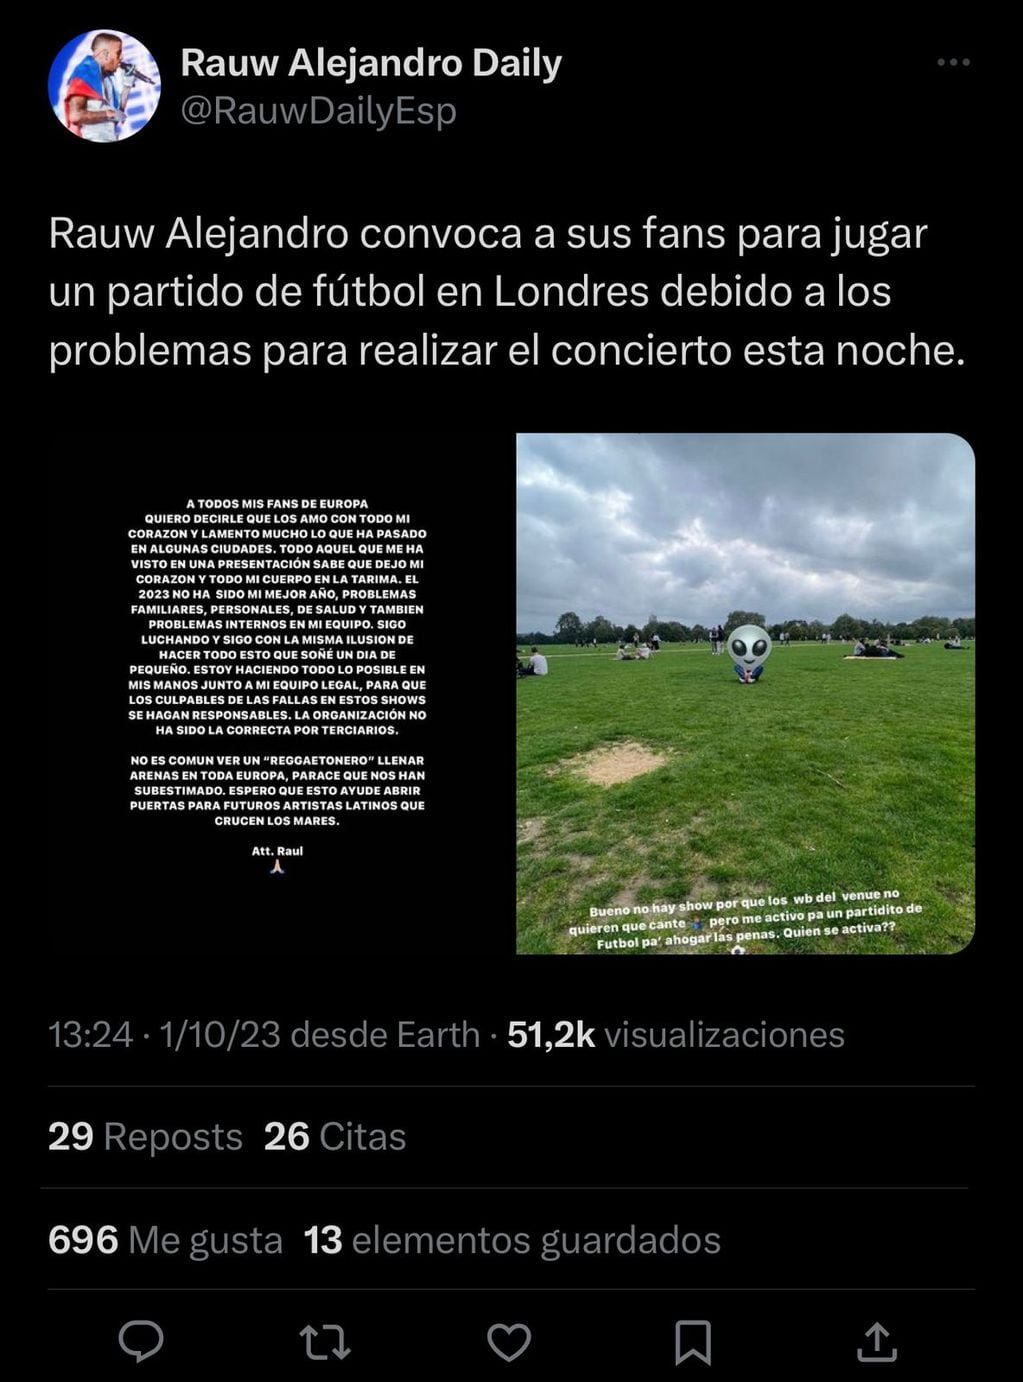 Rauw Alejandro tuvo que cancelar su concierto en Londres e invitó a sus fans a jugar un partido de futbol